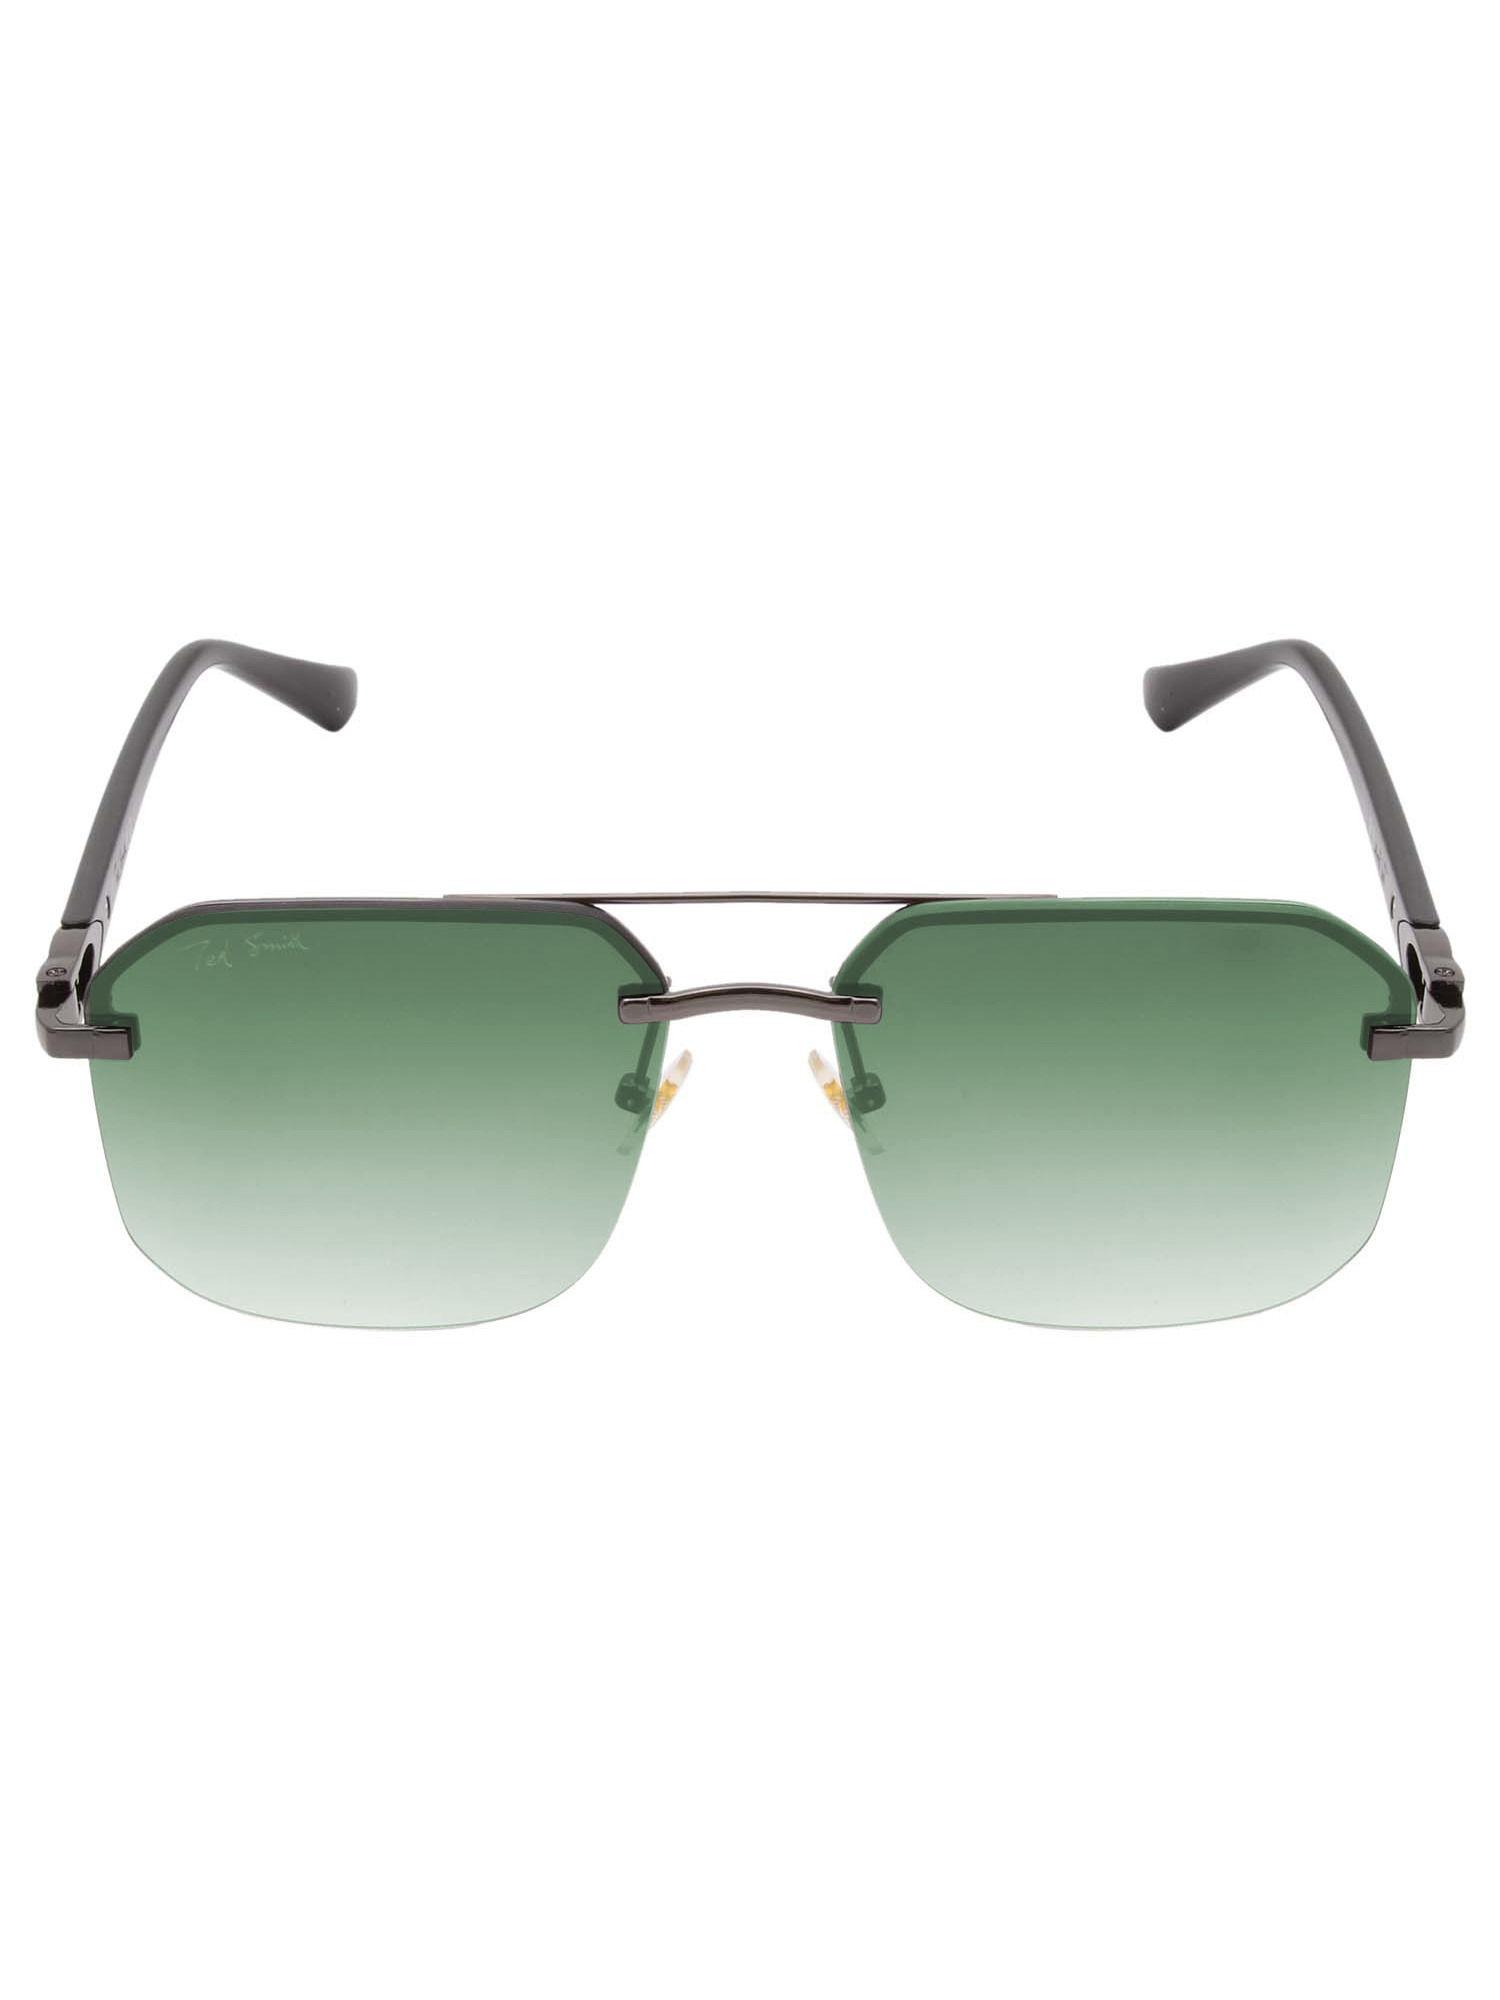 aviator sunglasses in black frame cartiez2 for men & women